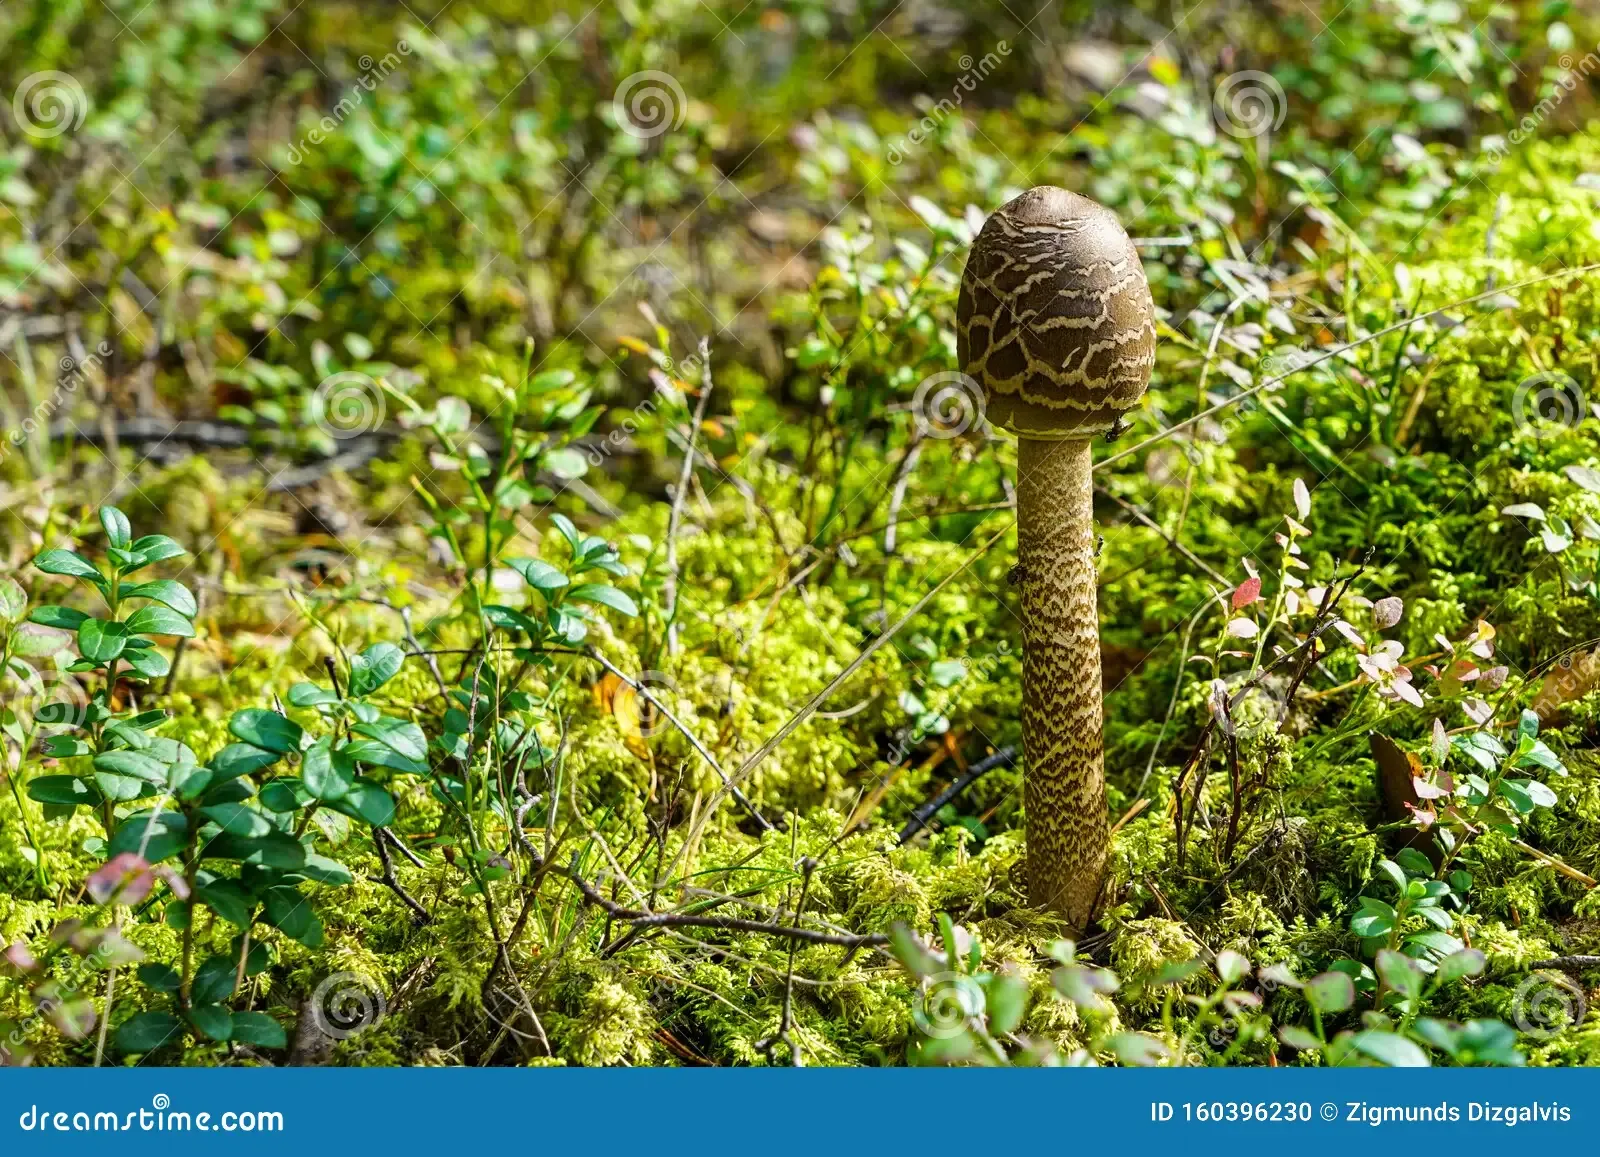 macrolepiota-procera-parasol-mushroom-large-prominent-fruiting-body-macrolepiota-procera-parasol-mushroom-160396230.jpg